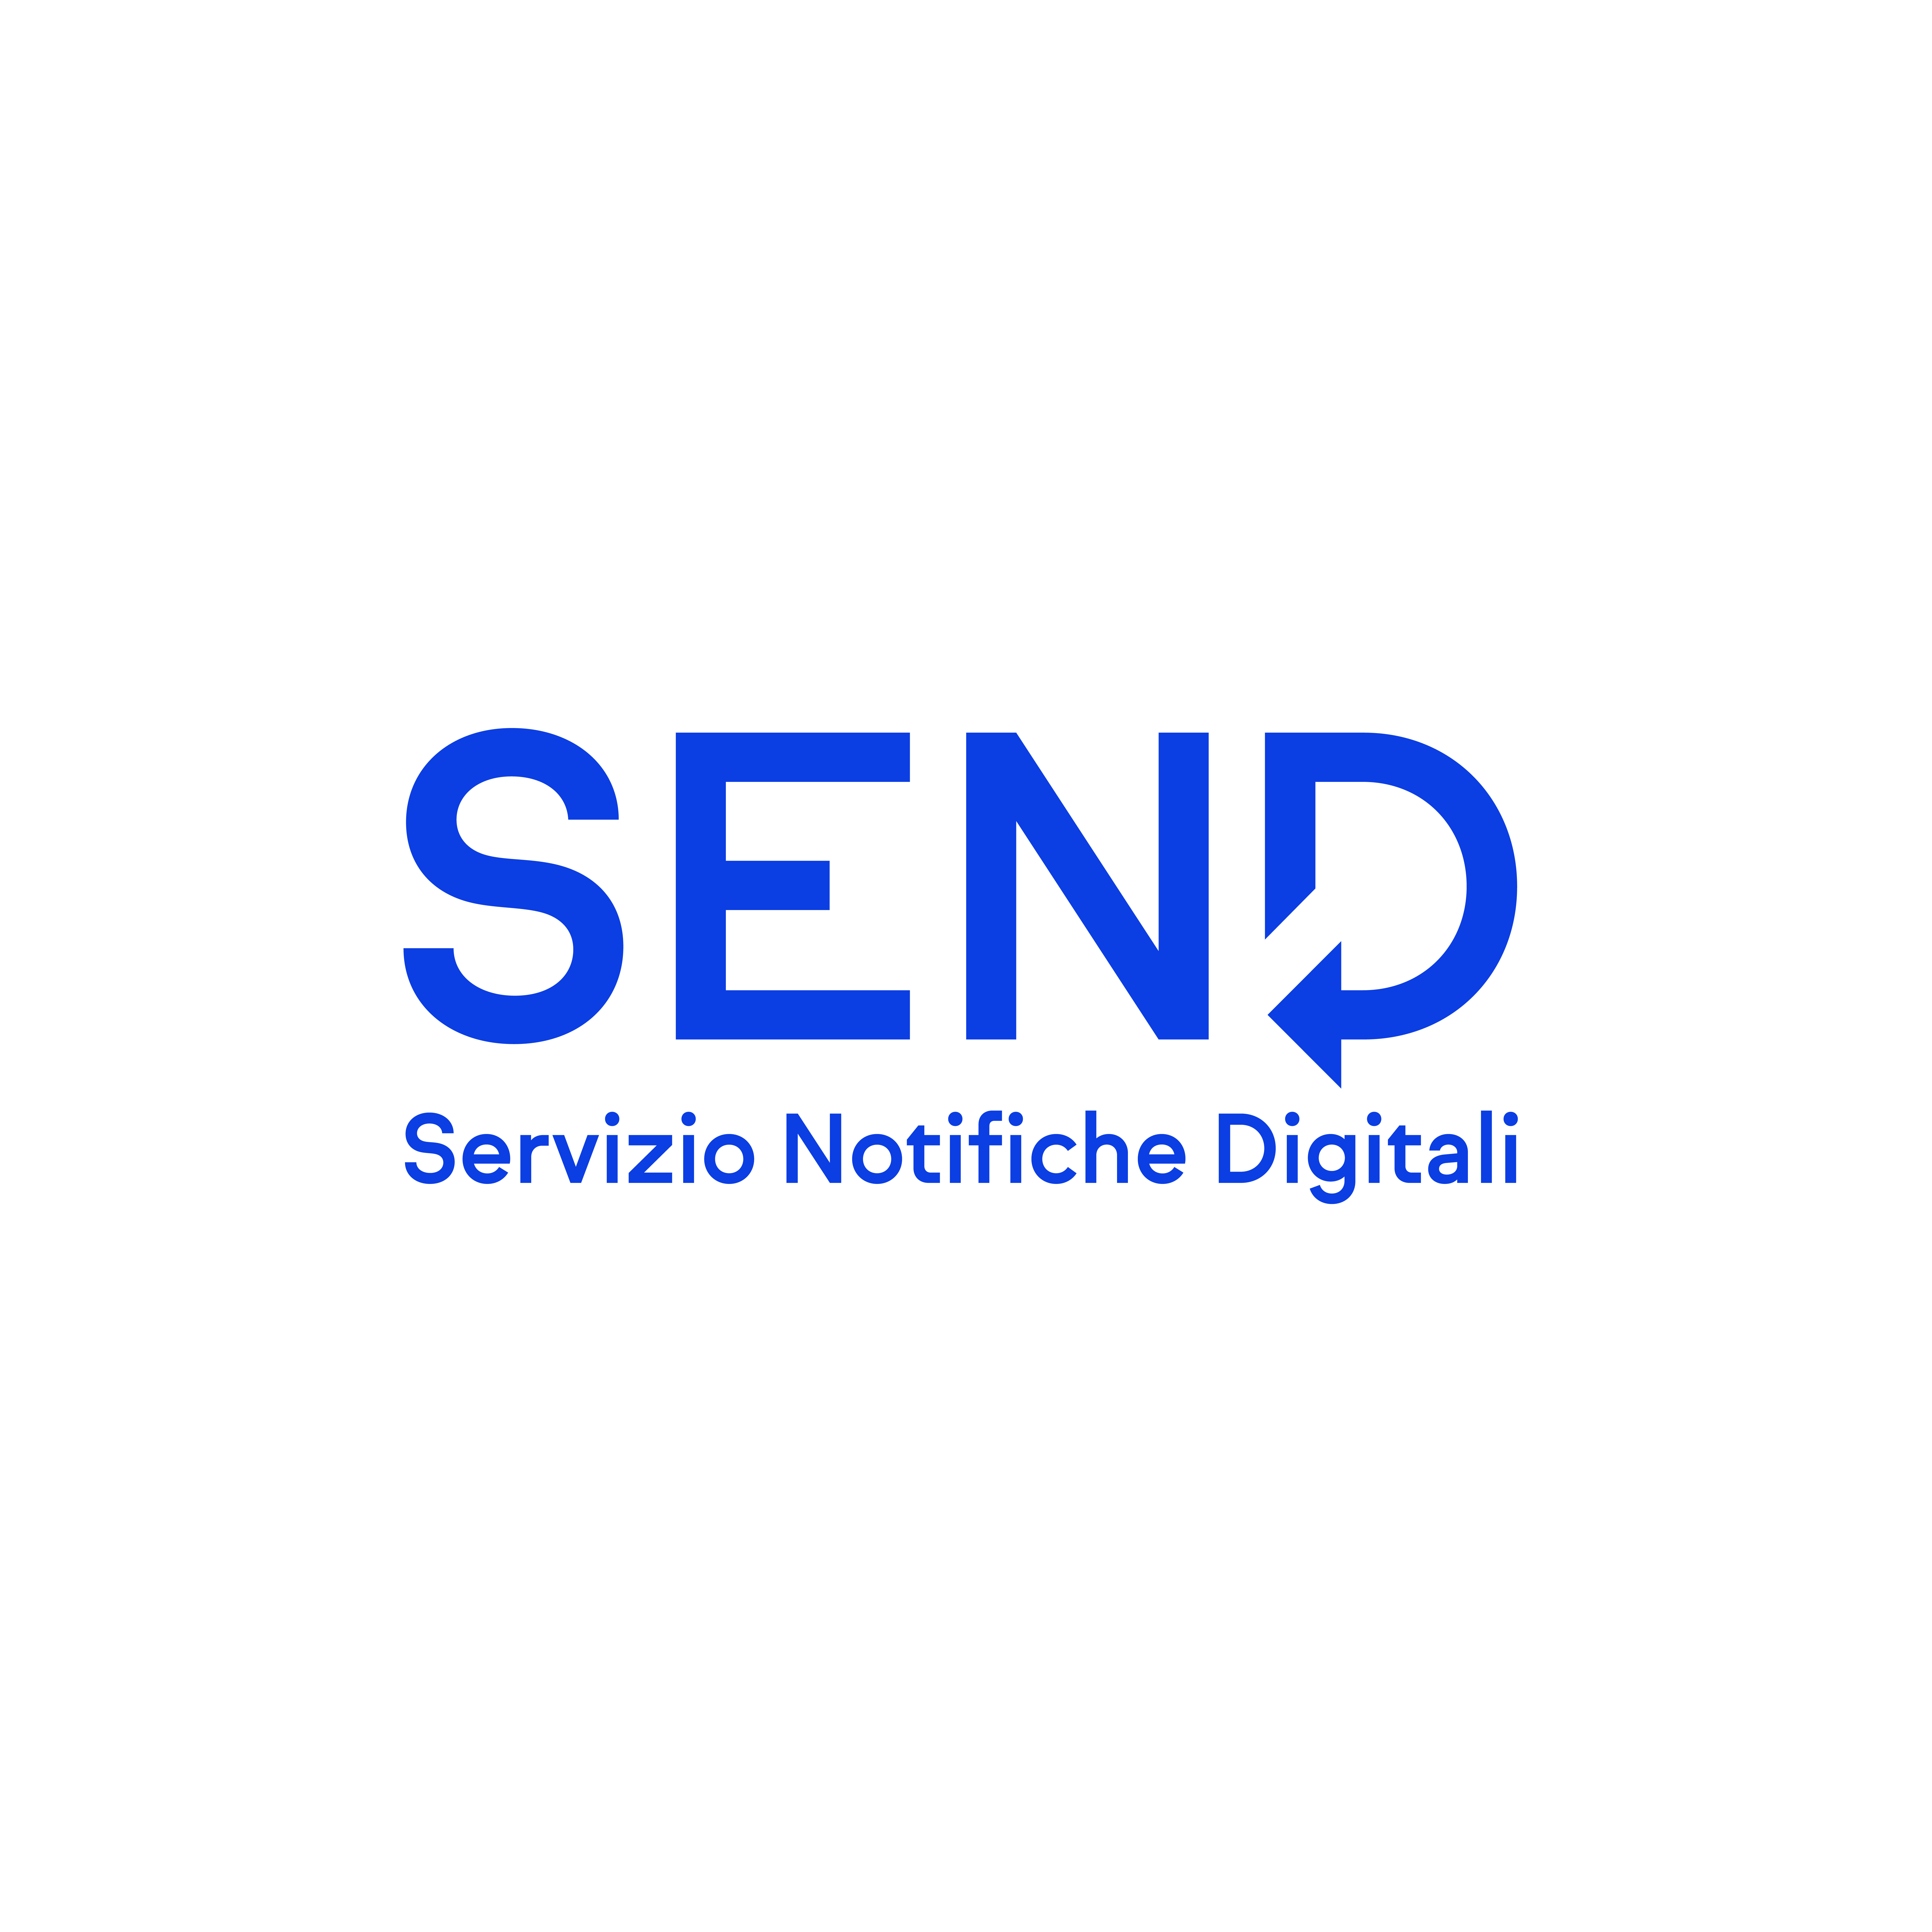 Send Servizio Notifiche Digitali